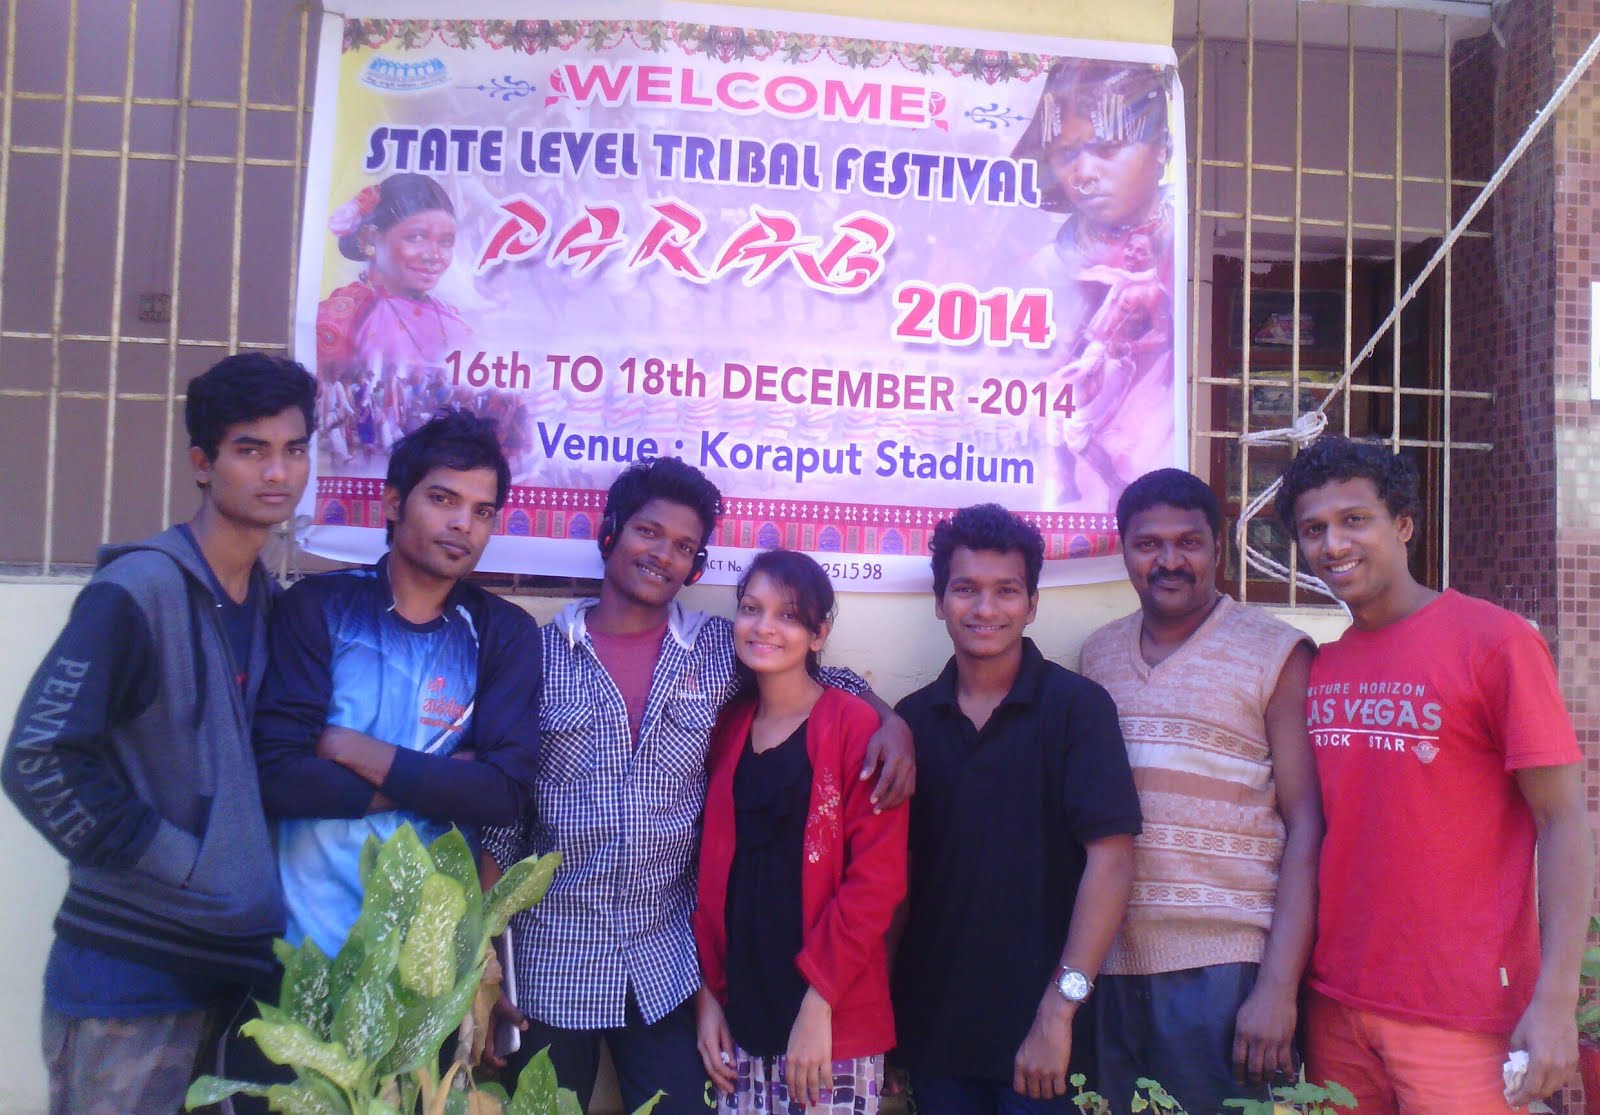 Koraput Parab festival 2014 at Odisha